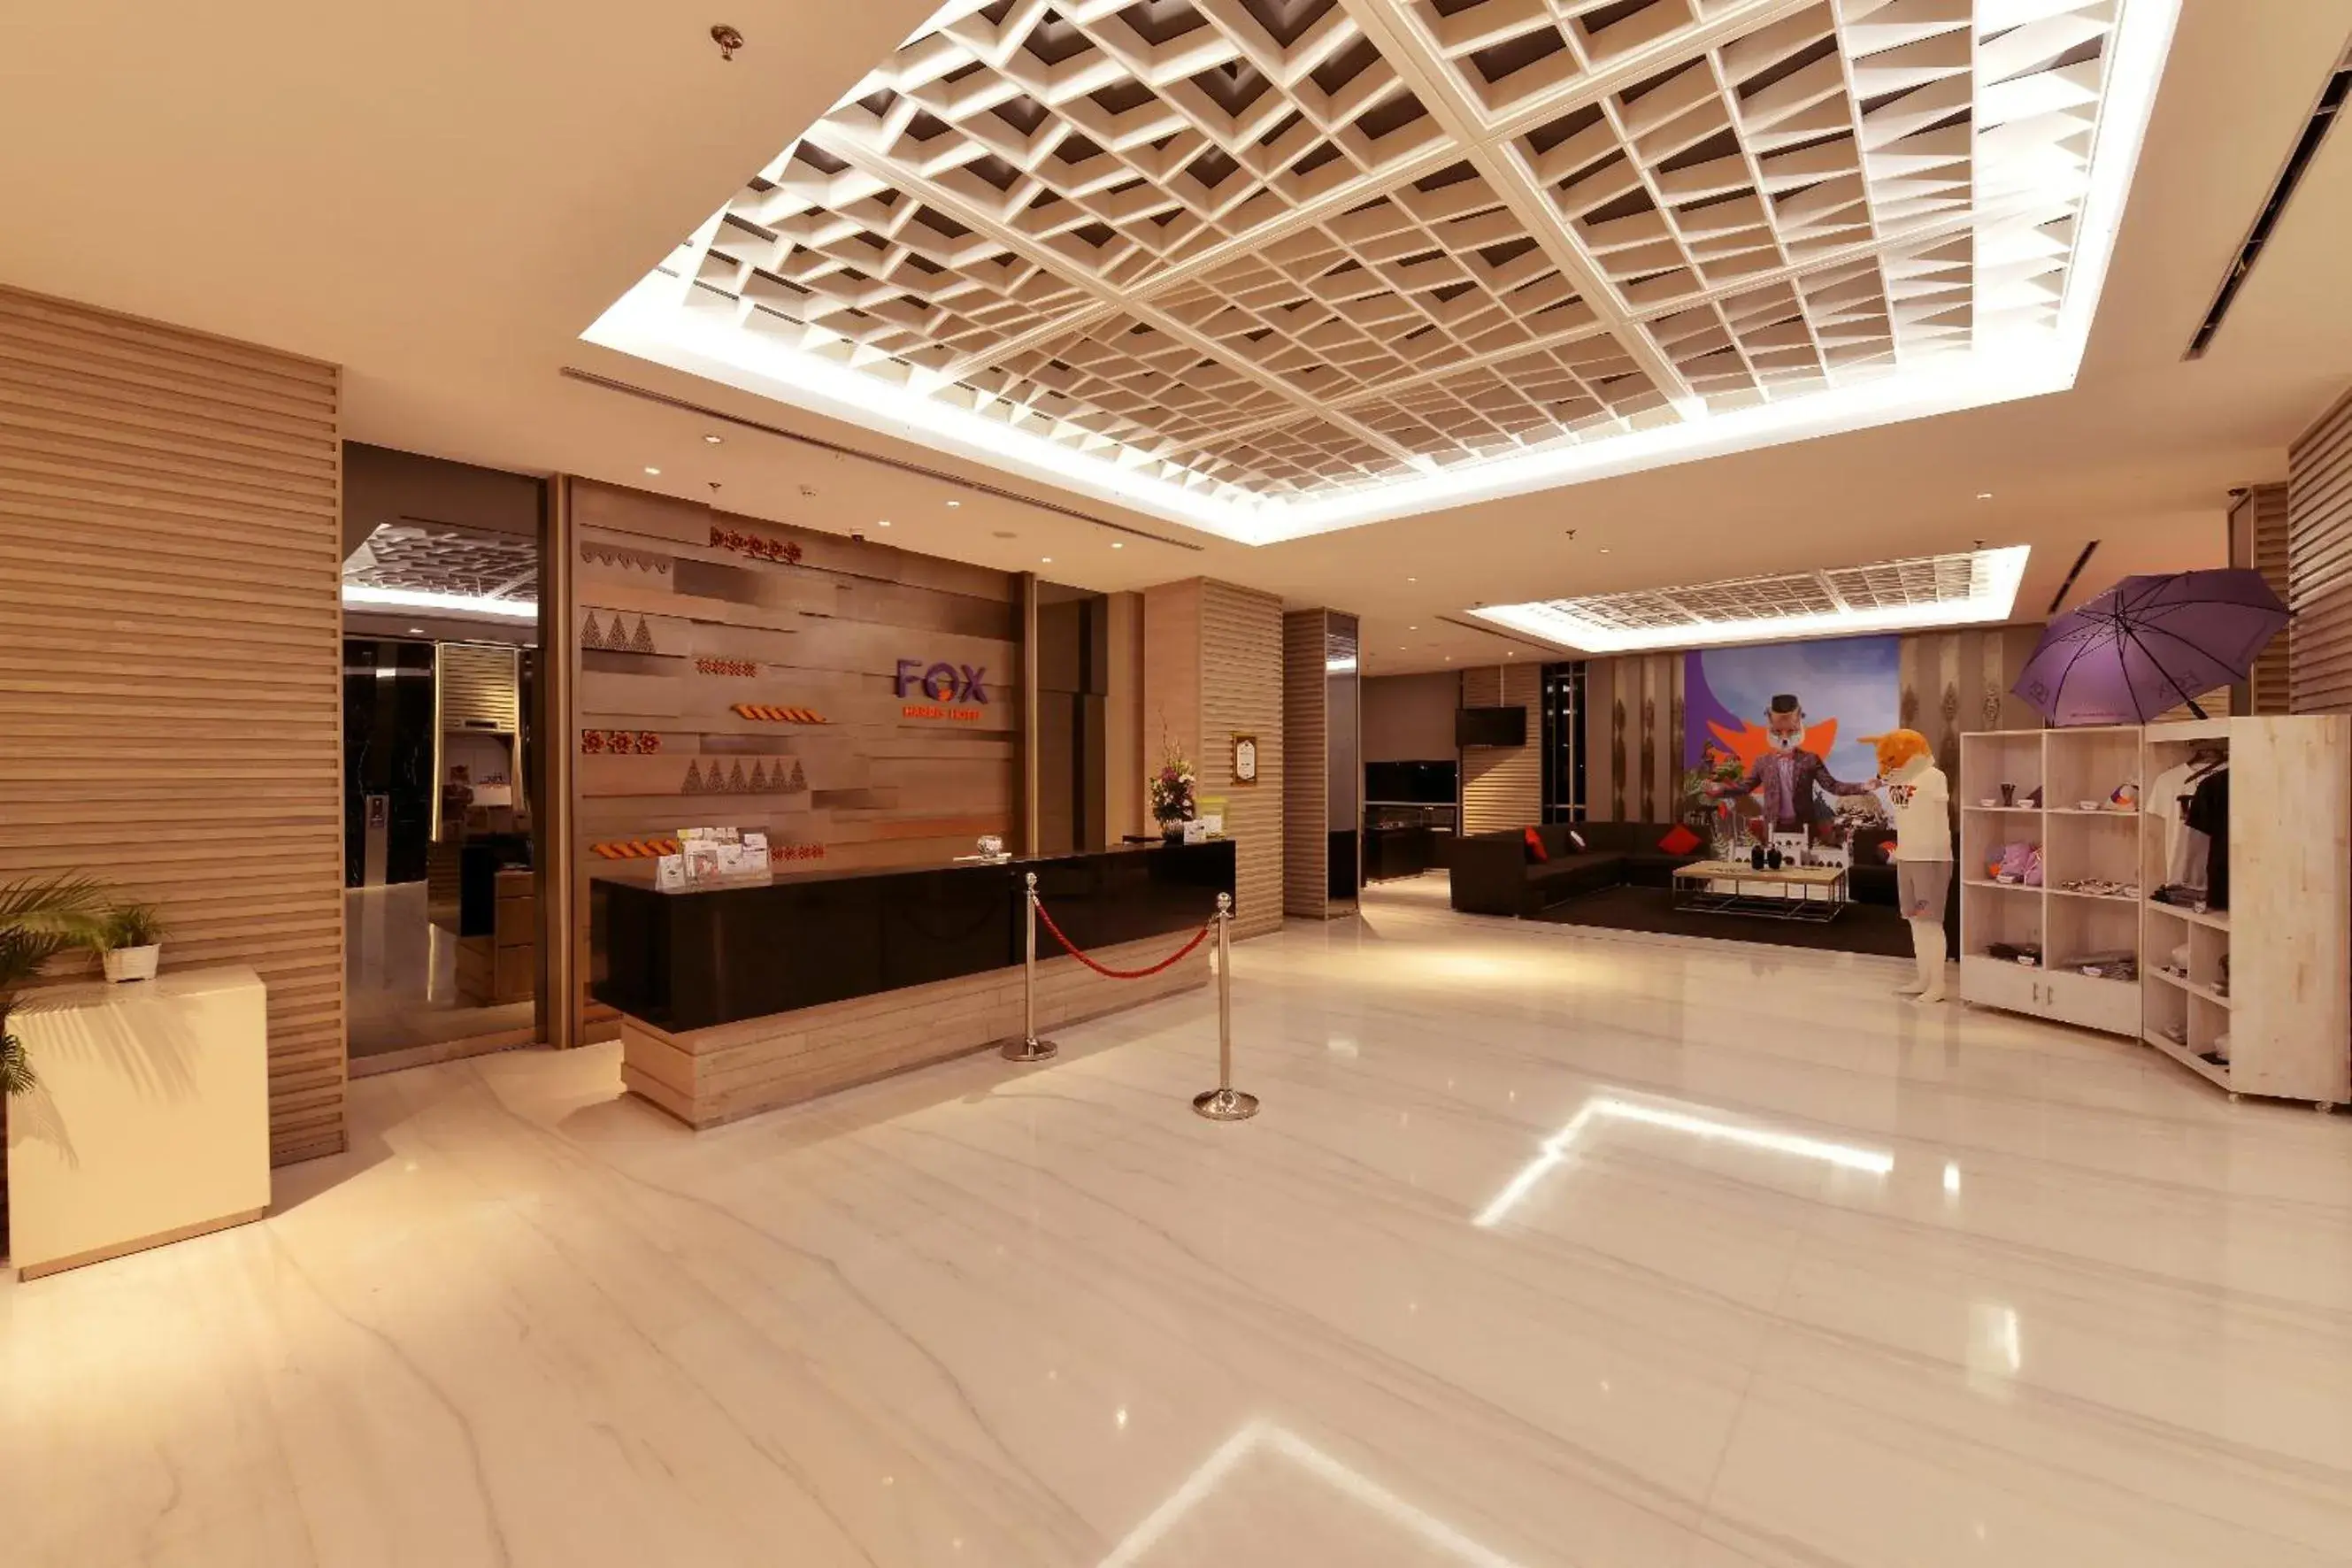 Lobby or reception, Lobby/Reception in FOX Hotel Pekanbaru